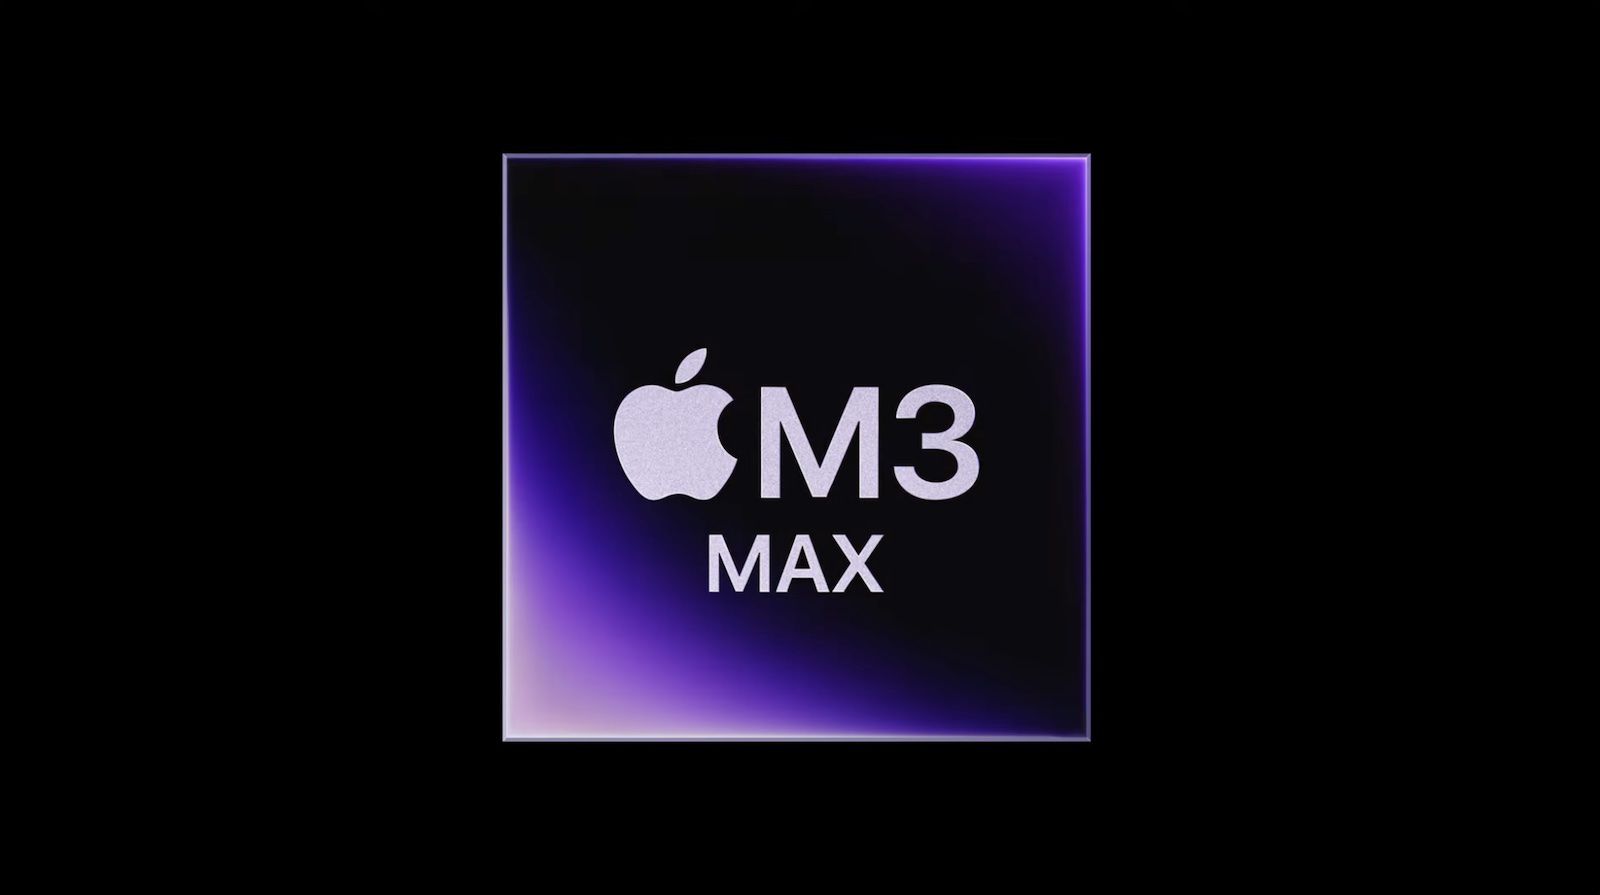 初期のベンチマーク結果では、M3 Max チップは M2 Ultra チップとほぼ同じ速度です